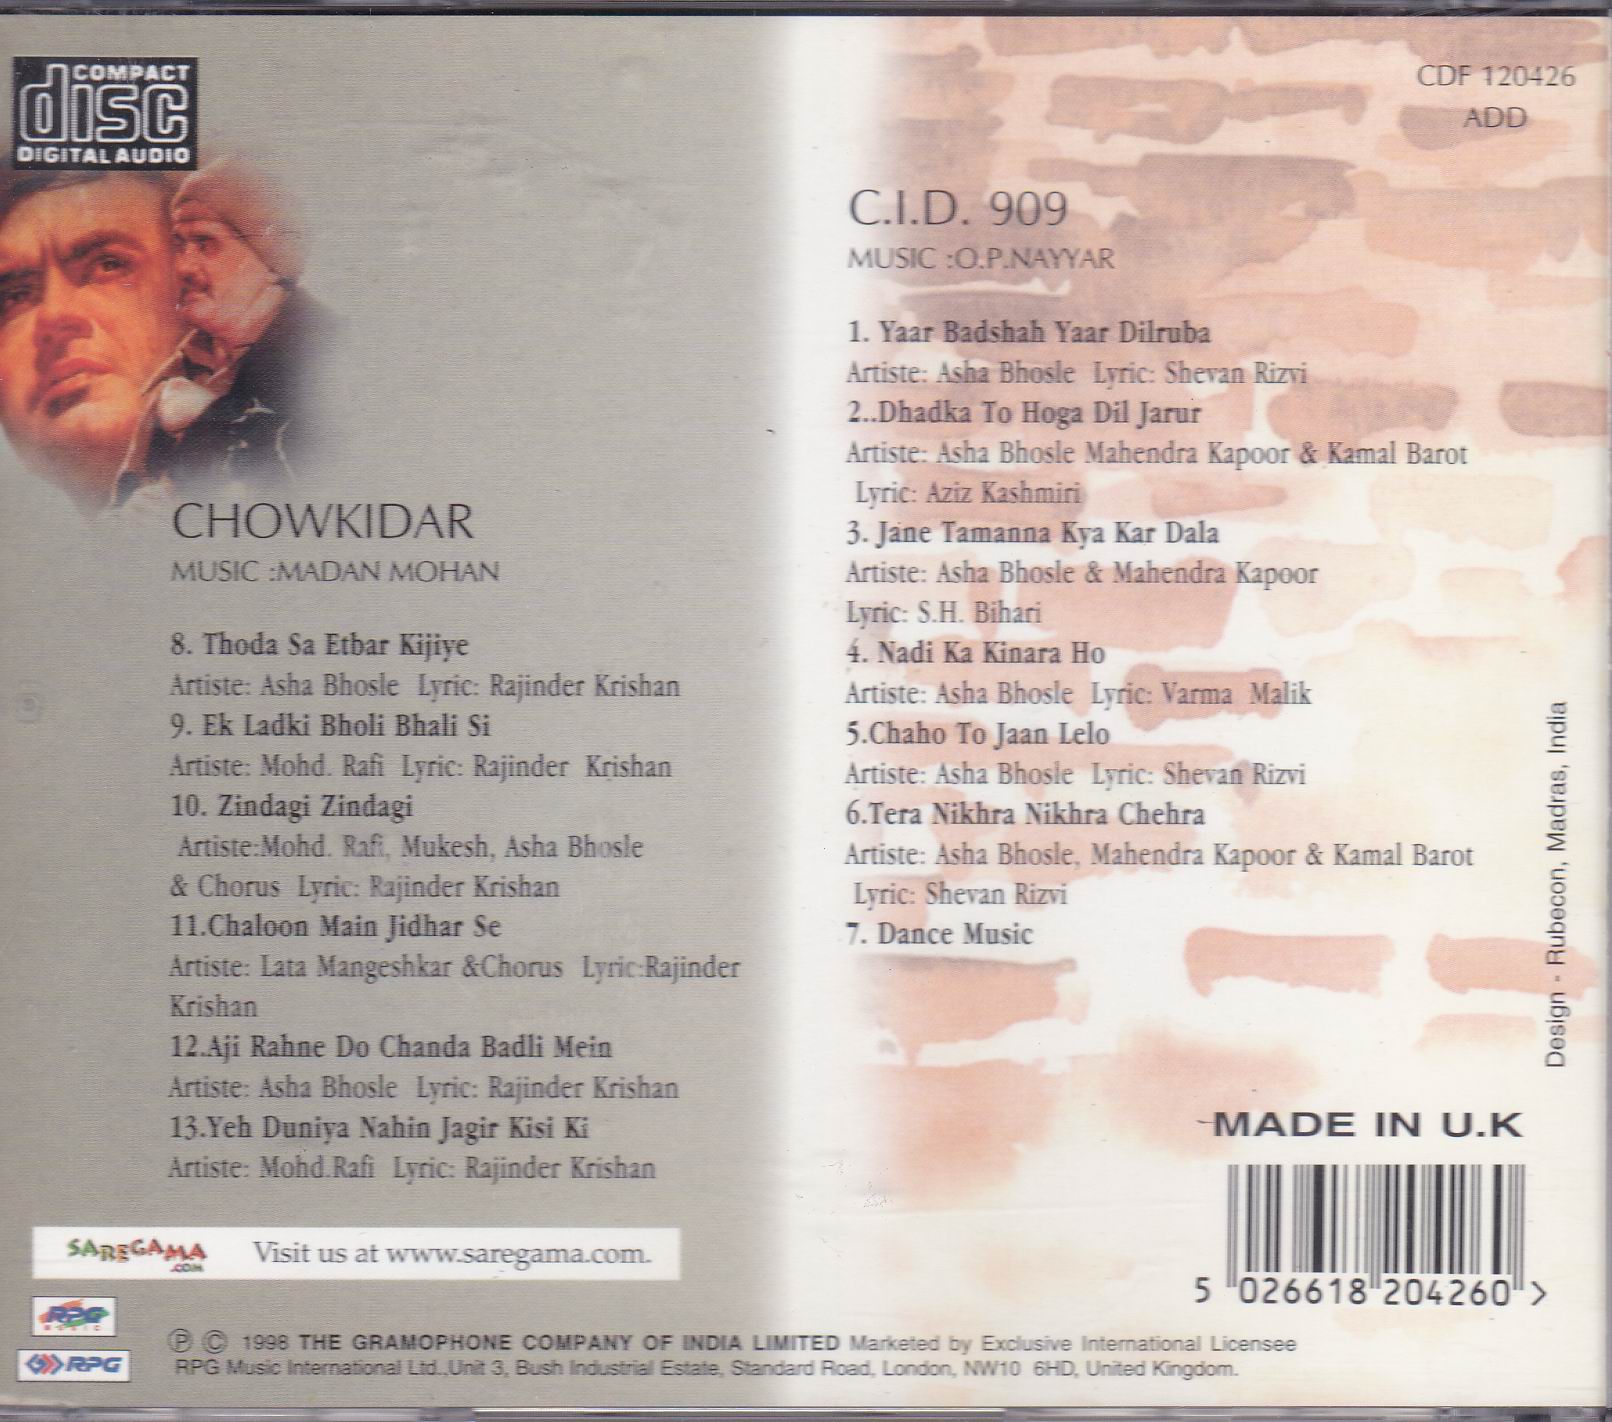 Indian Cd Cid 909 Chowkidar EMI CD - Click Image to Close